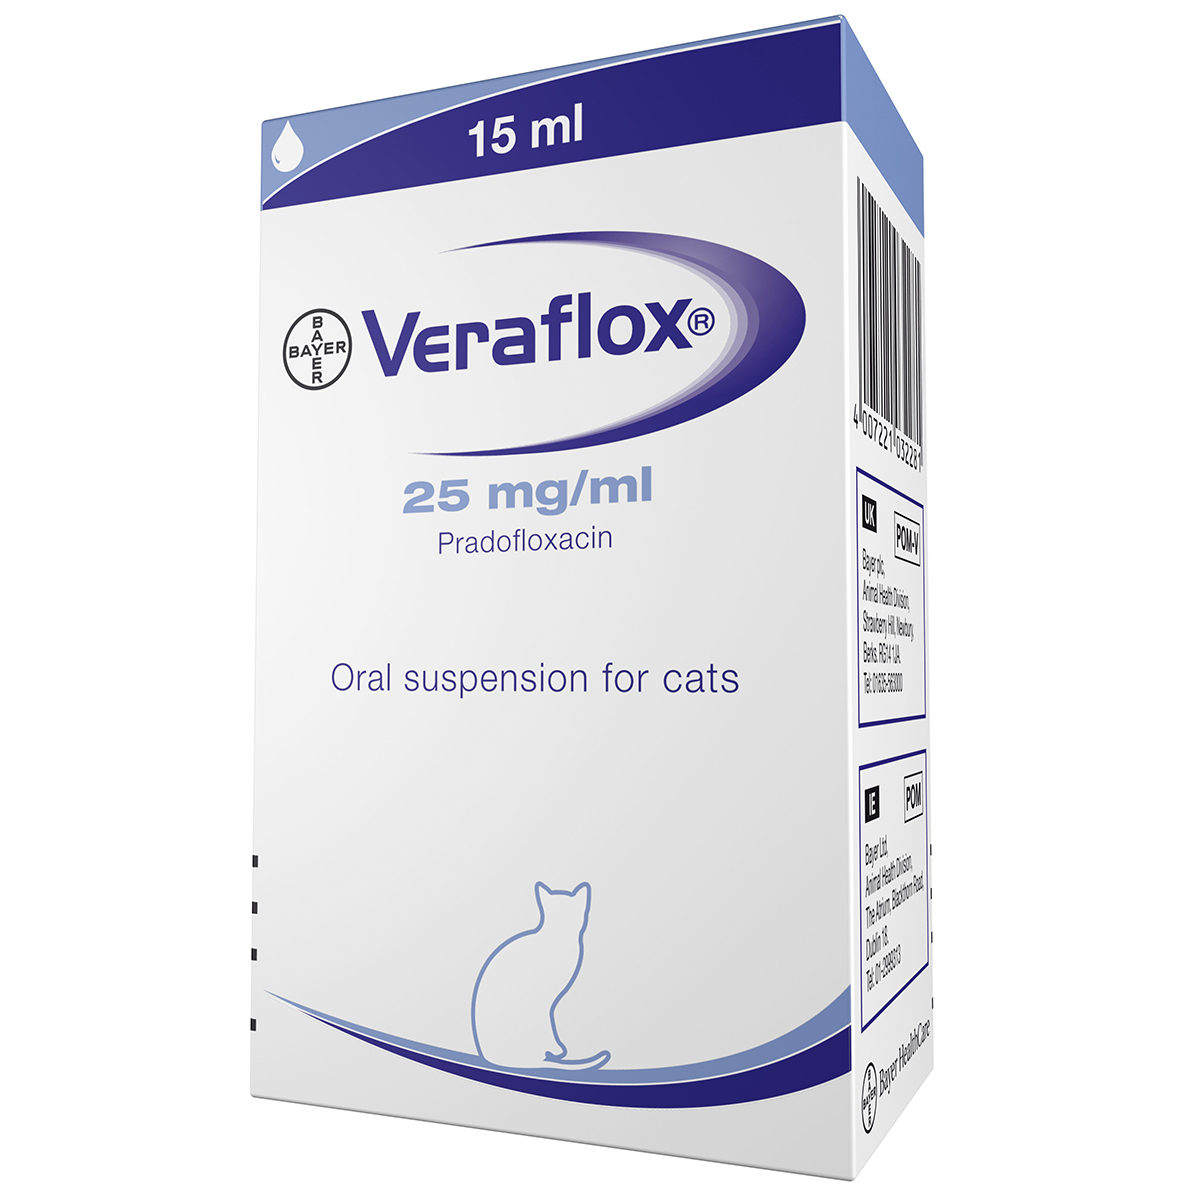 Veraflox suspensie orala pisici 15 ml Bayer imagine 2022